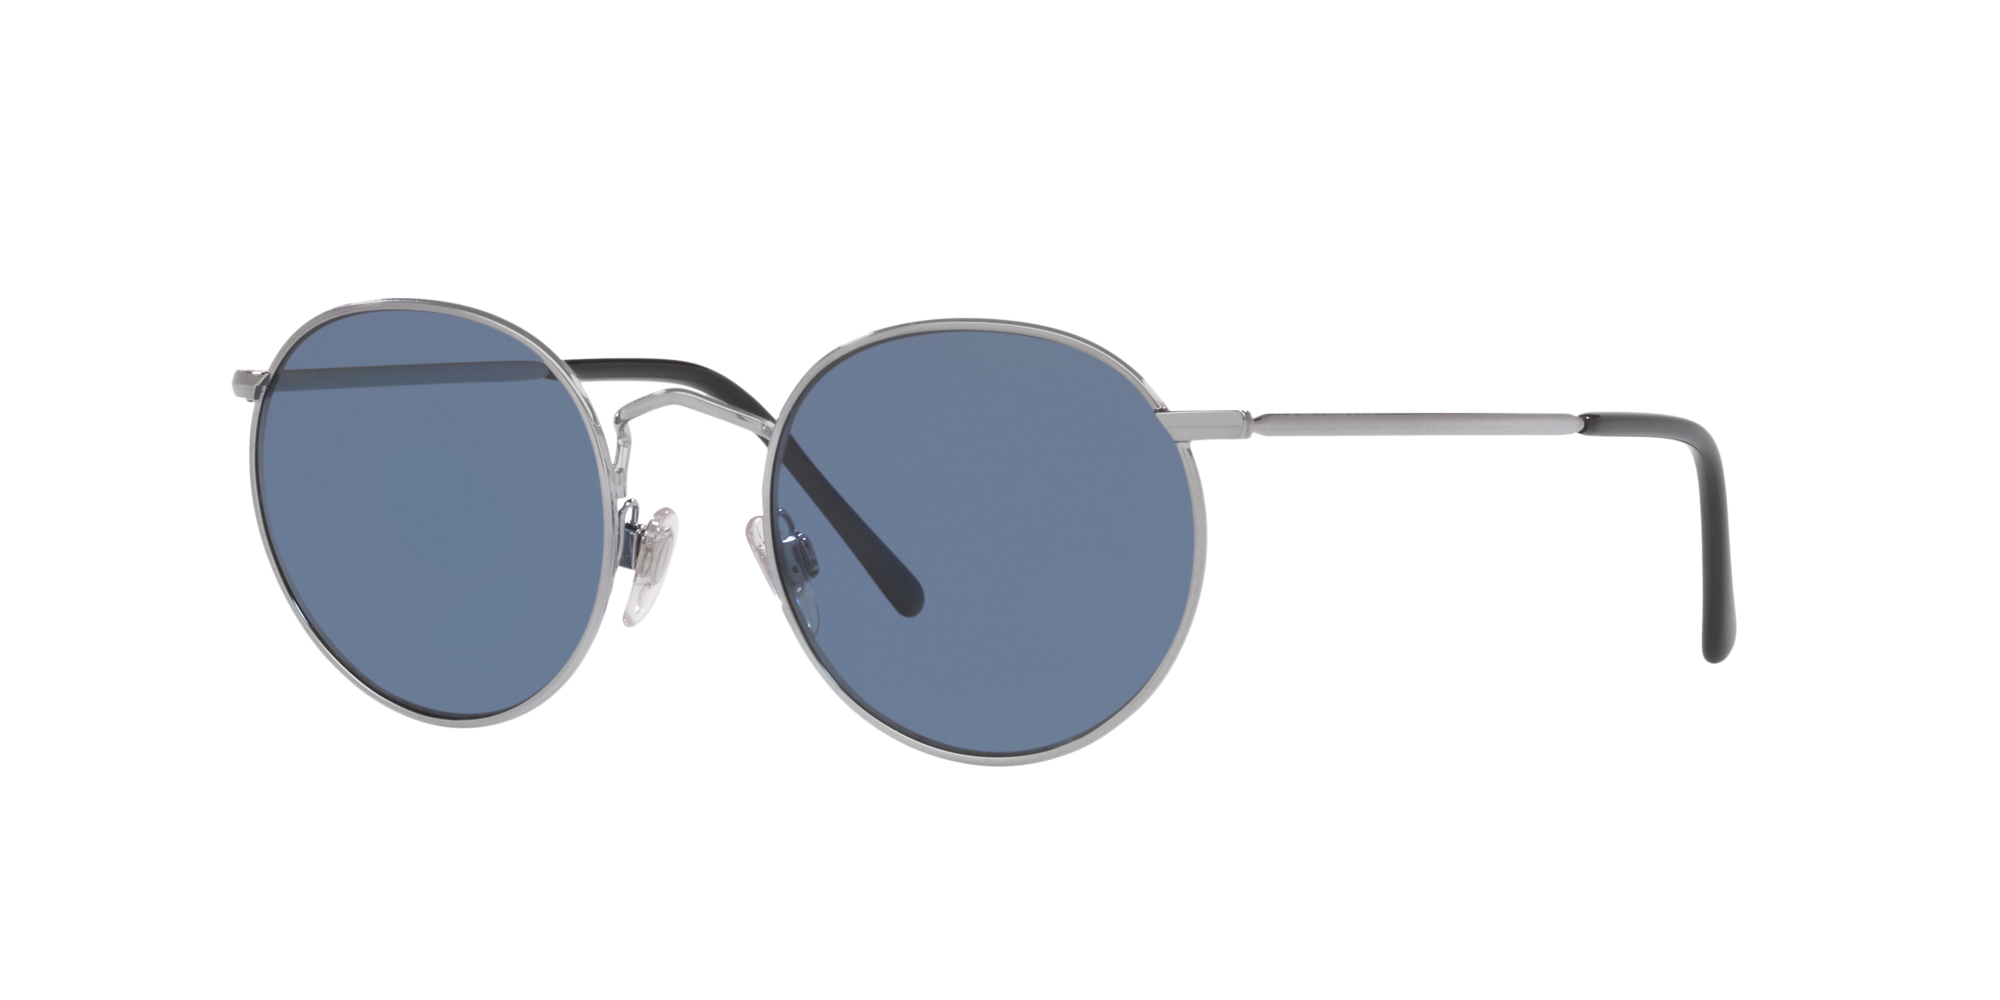 Sunglass Hut - Top Brands of Sunglasses | Bass Pro Shops